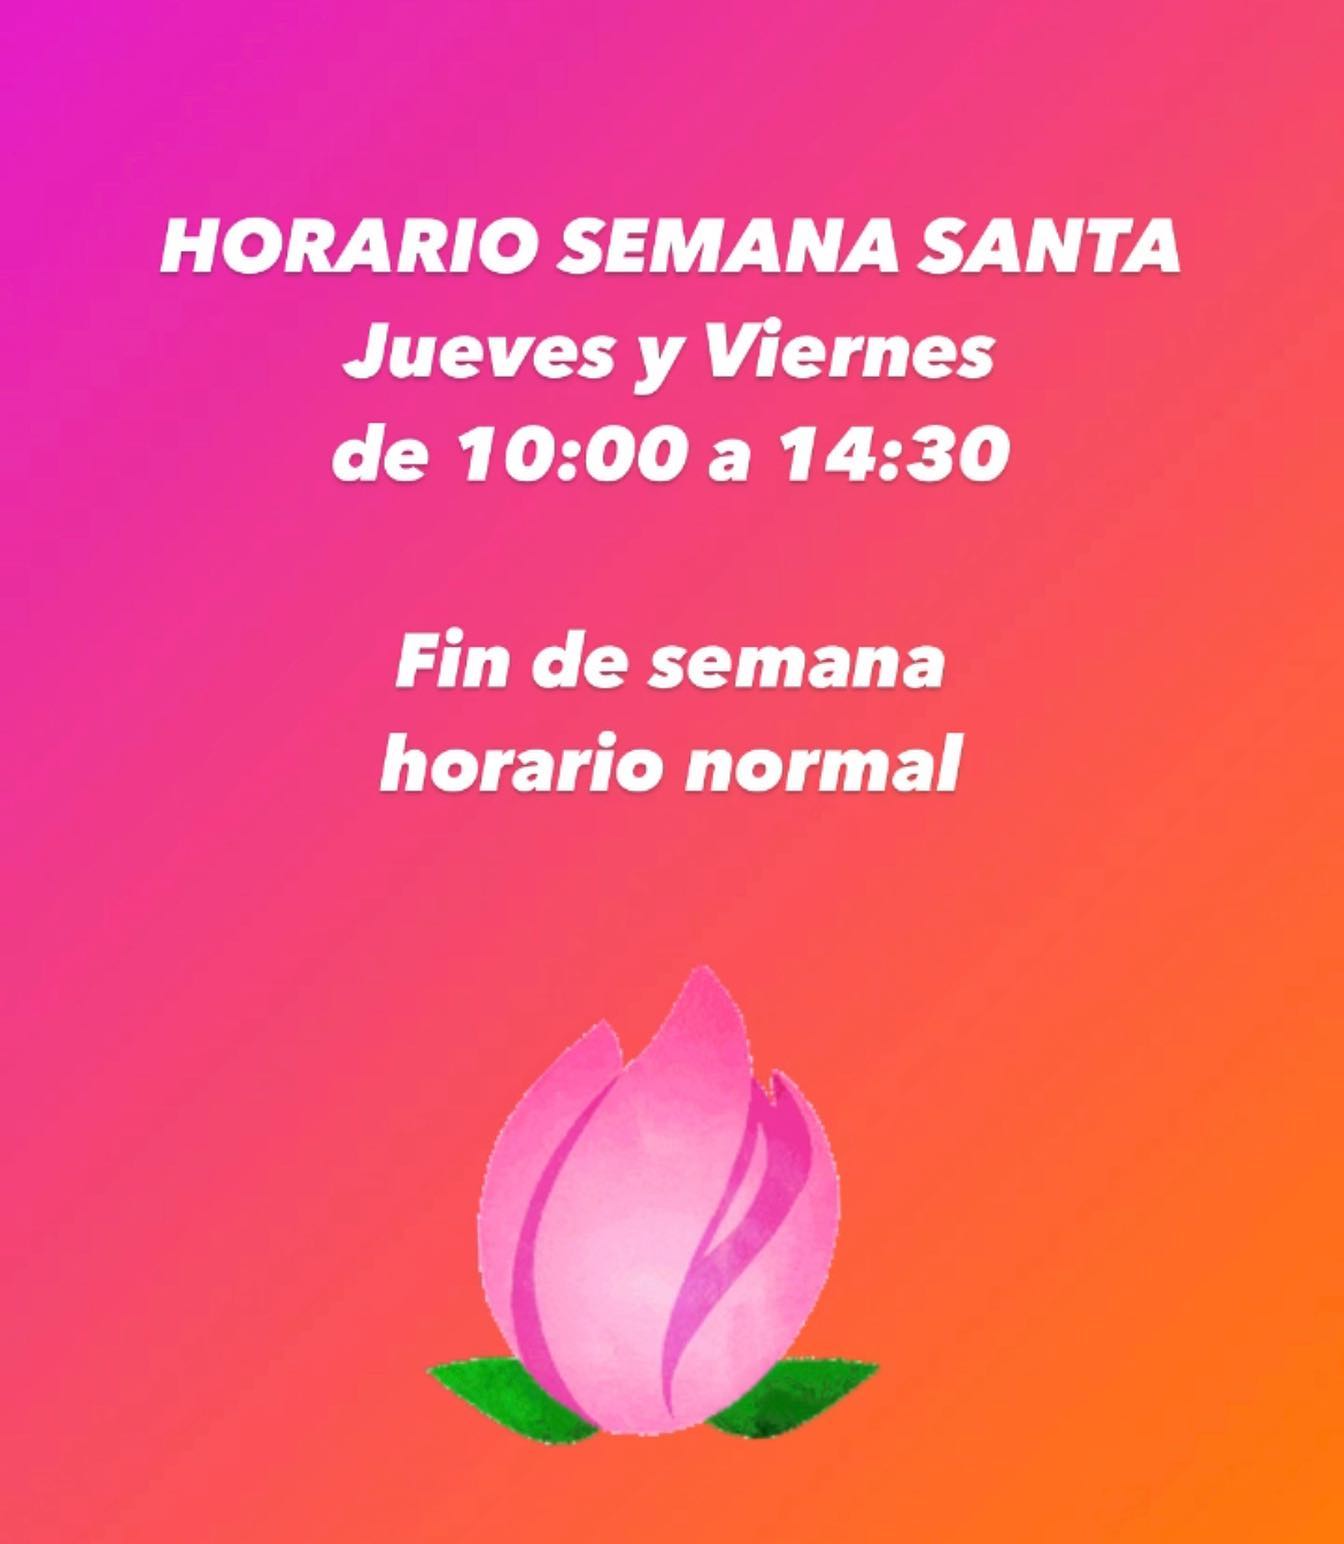 Nuestro horario de Semana Santa:
Jueves y Viernes de 10 a 14:30 y fin de semana horario normal @viverosinfraplant #chiclanadelafrontera #chiclana #vivero